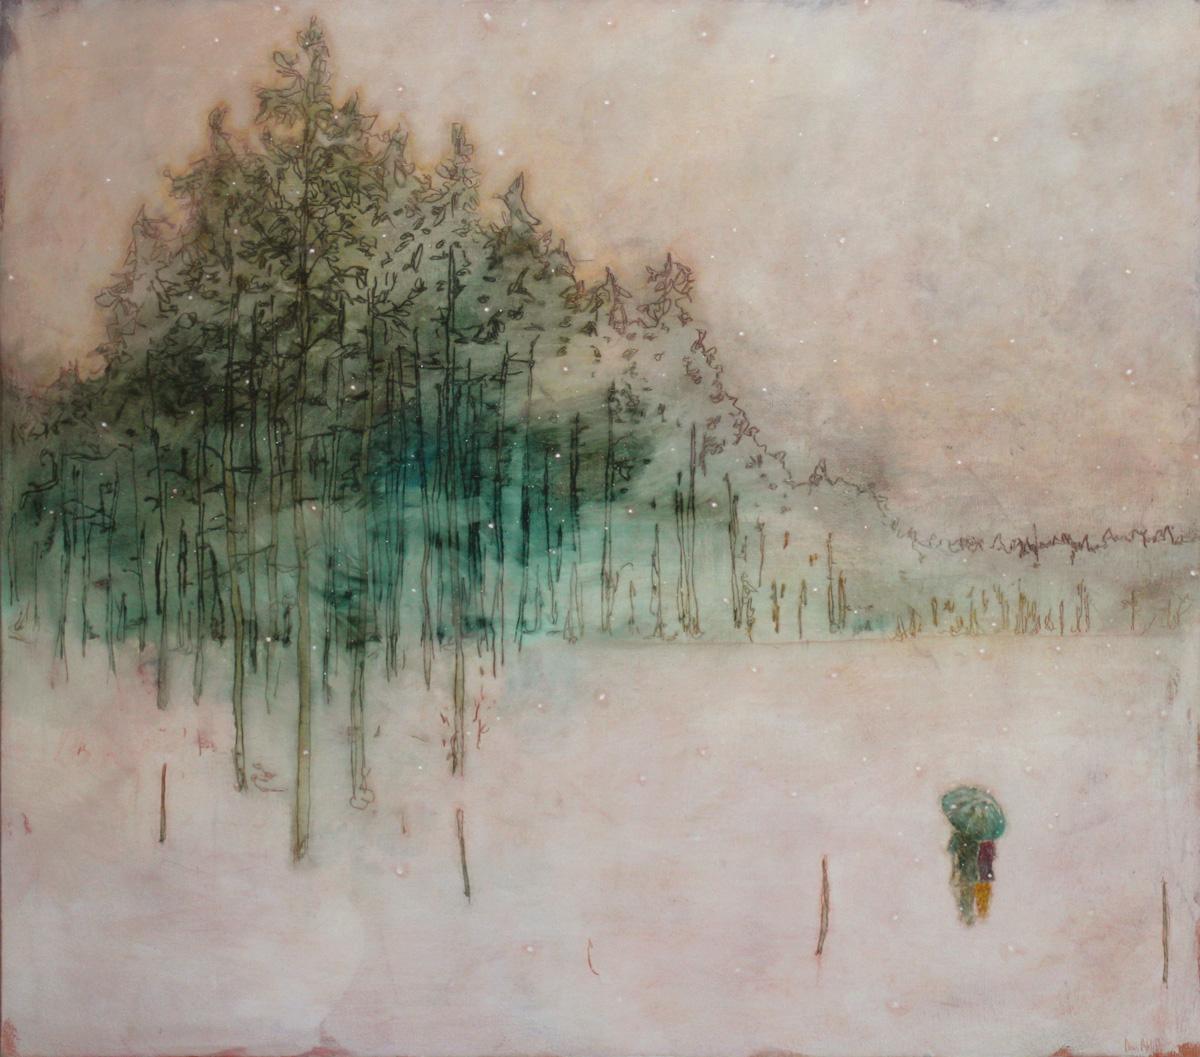 daniel-ablitt-winter-walk-(treeline)